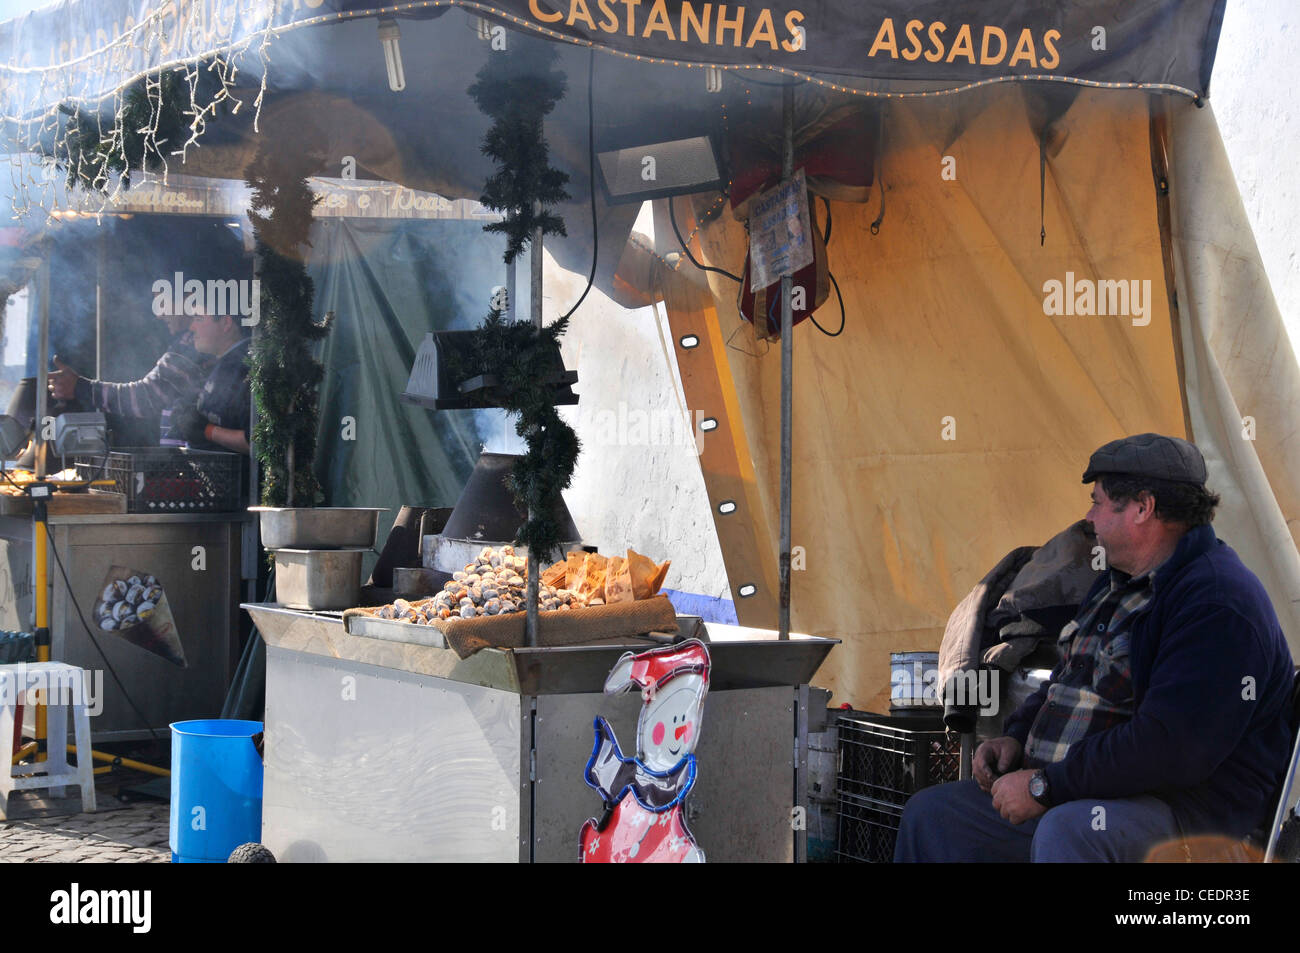 Castanhas Assadas (roasting chestnuts) stall, Obidos Portugal Stock Photo